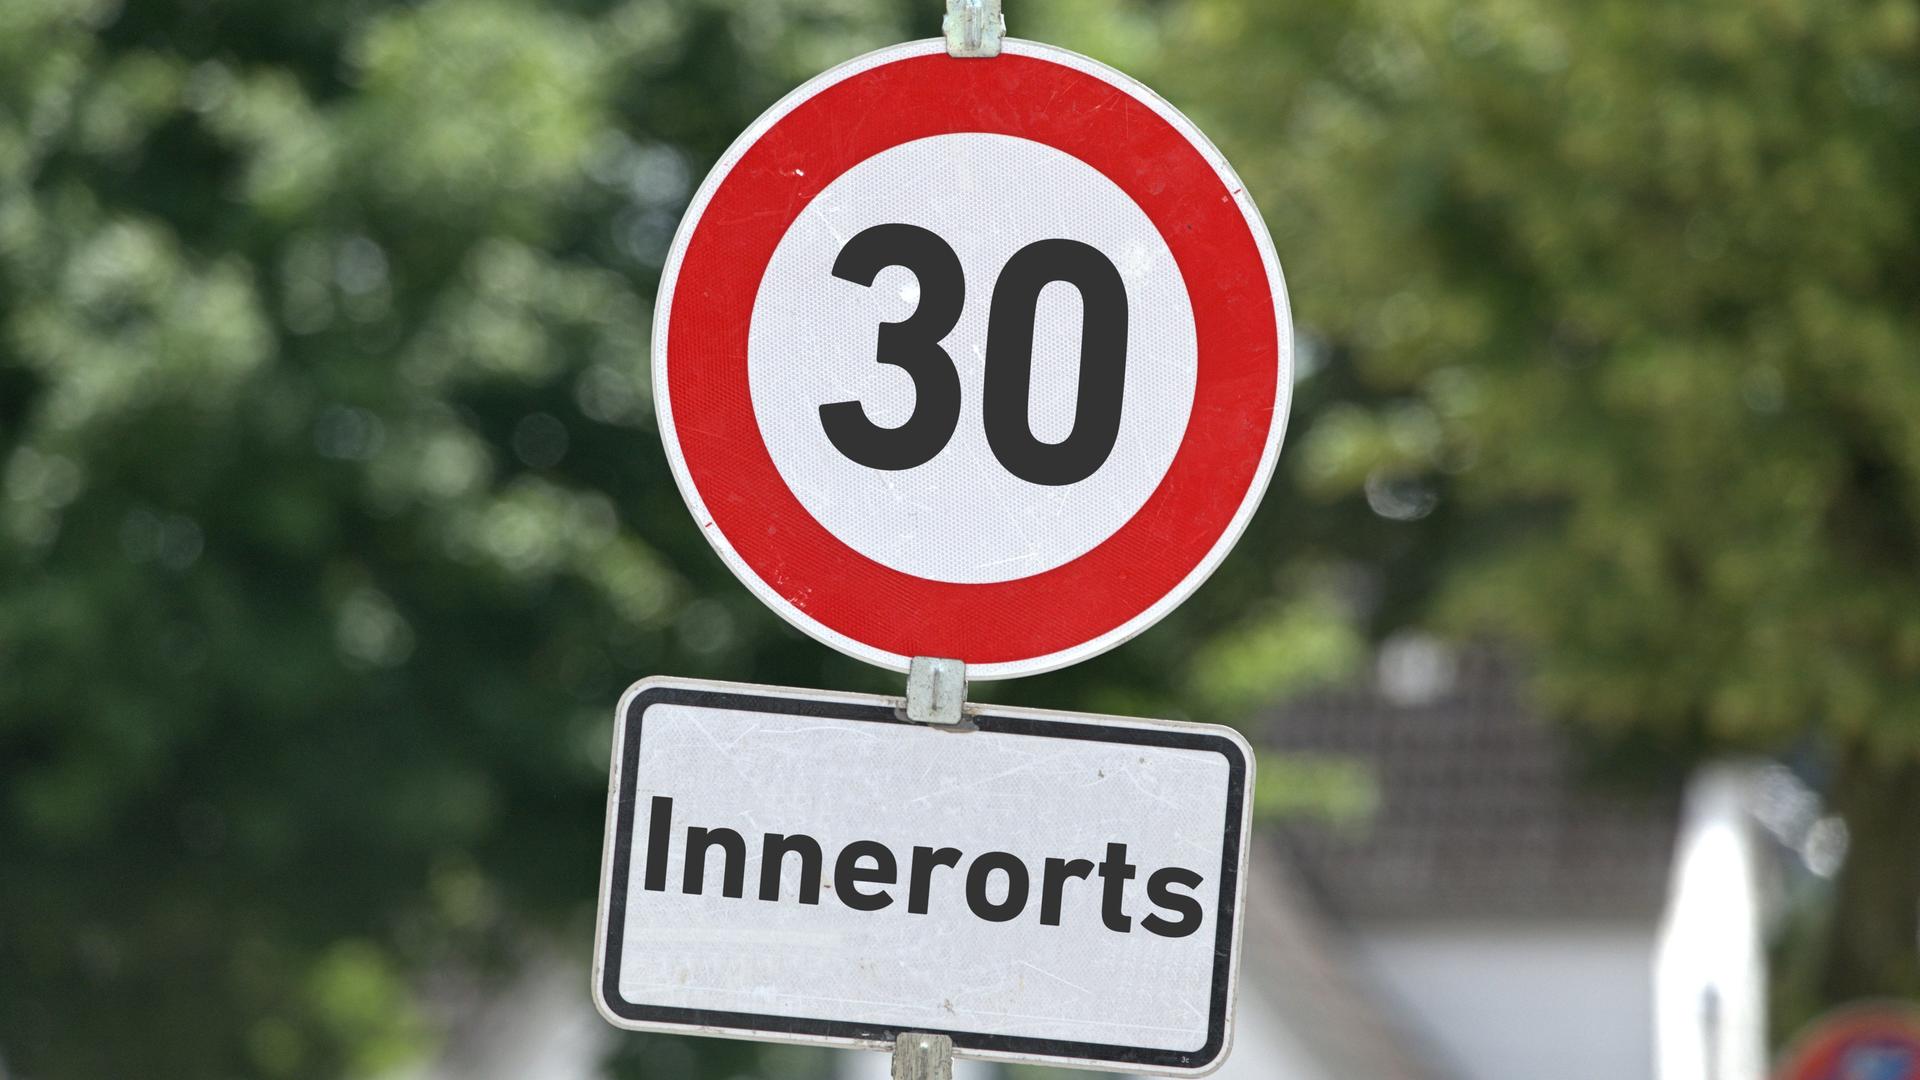 Verkehrszeichen in runder Form mit der Aufschrift "30" sowie ein Zusatzschild mit der Aufschrift: "Innerorts" an einem Schildermast. Im Hintergrund sieht man Bäume.